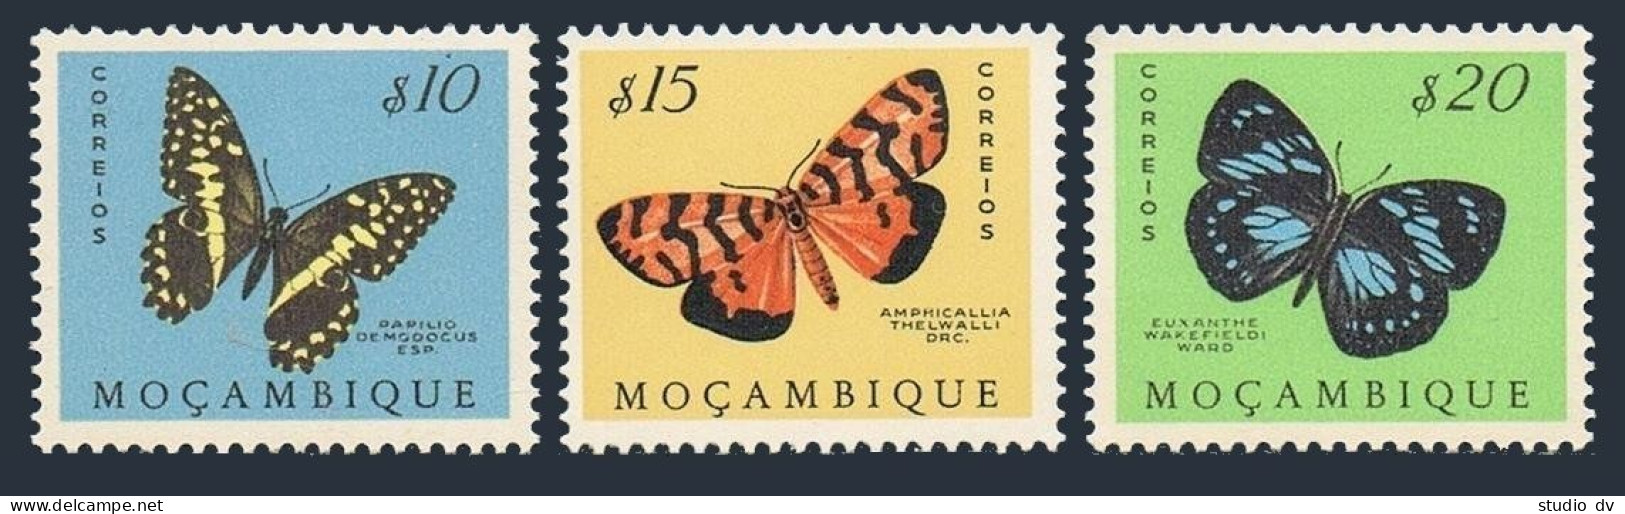 Mozambique 364-366, MNH. Michel 417-419. Butterflies, Moths 1953. - Mozambique